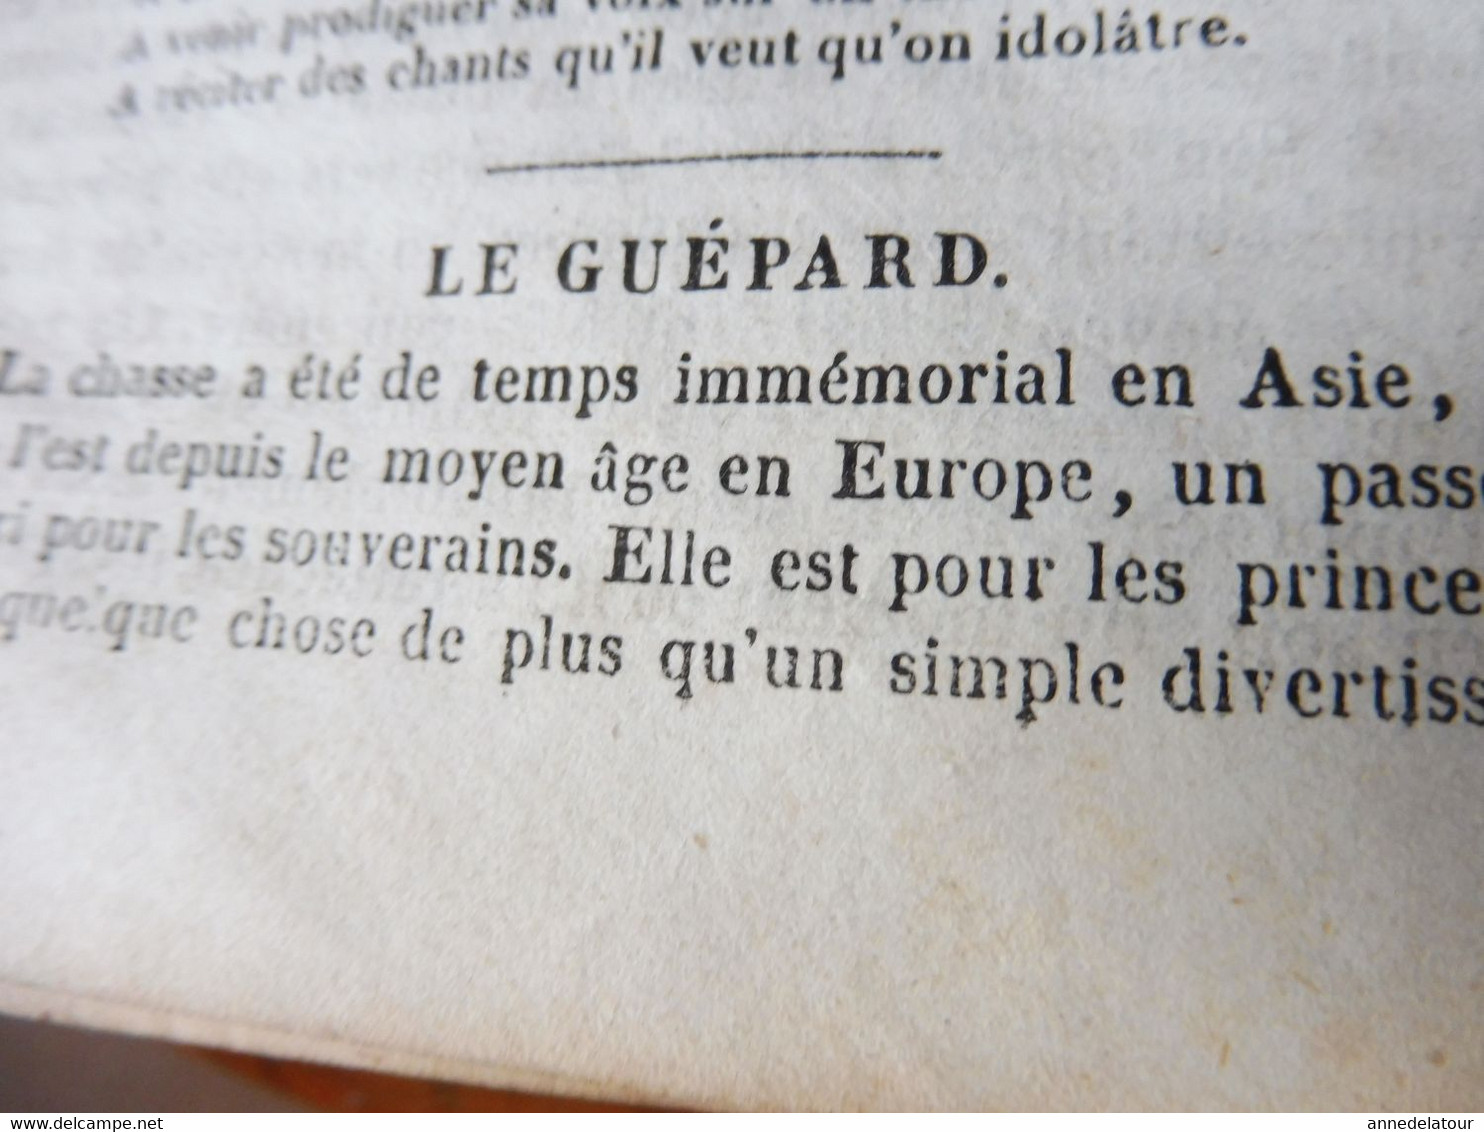 1839 MP Le testament d'Eudamidas (Poussin); Une période de vie de PASCAL; Roi des violons (Louis XIV); Prolétaires; Etc